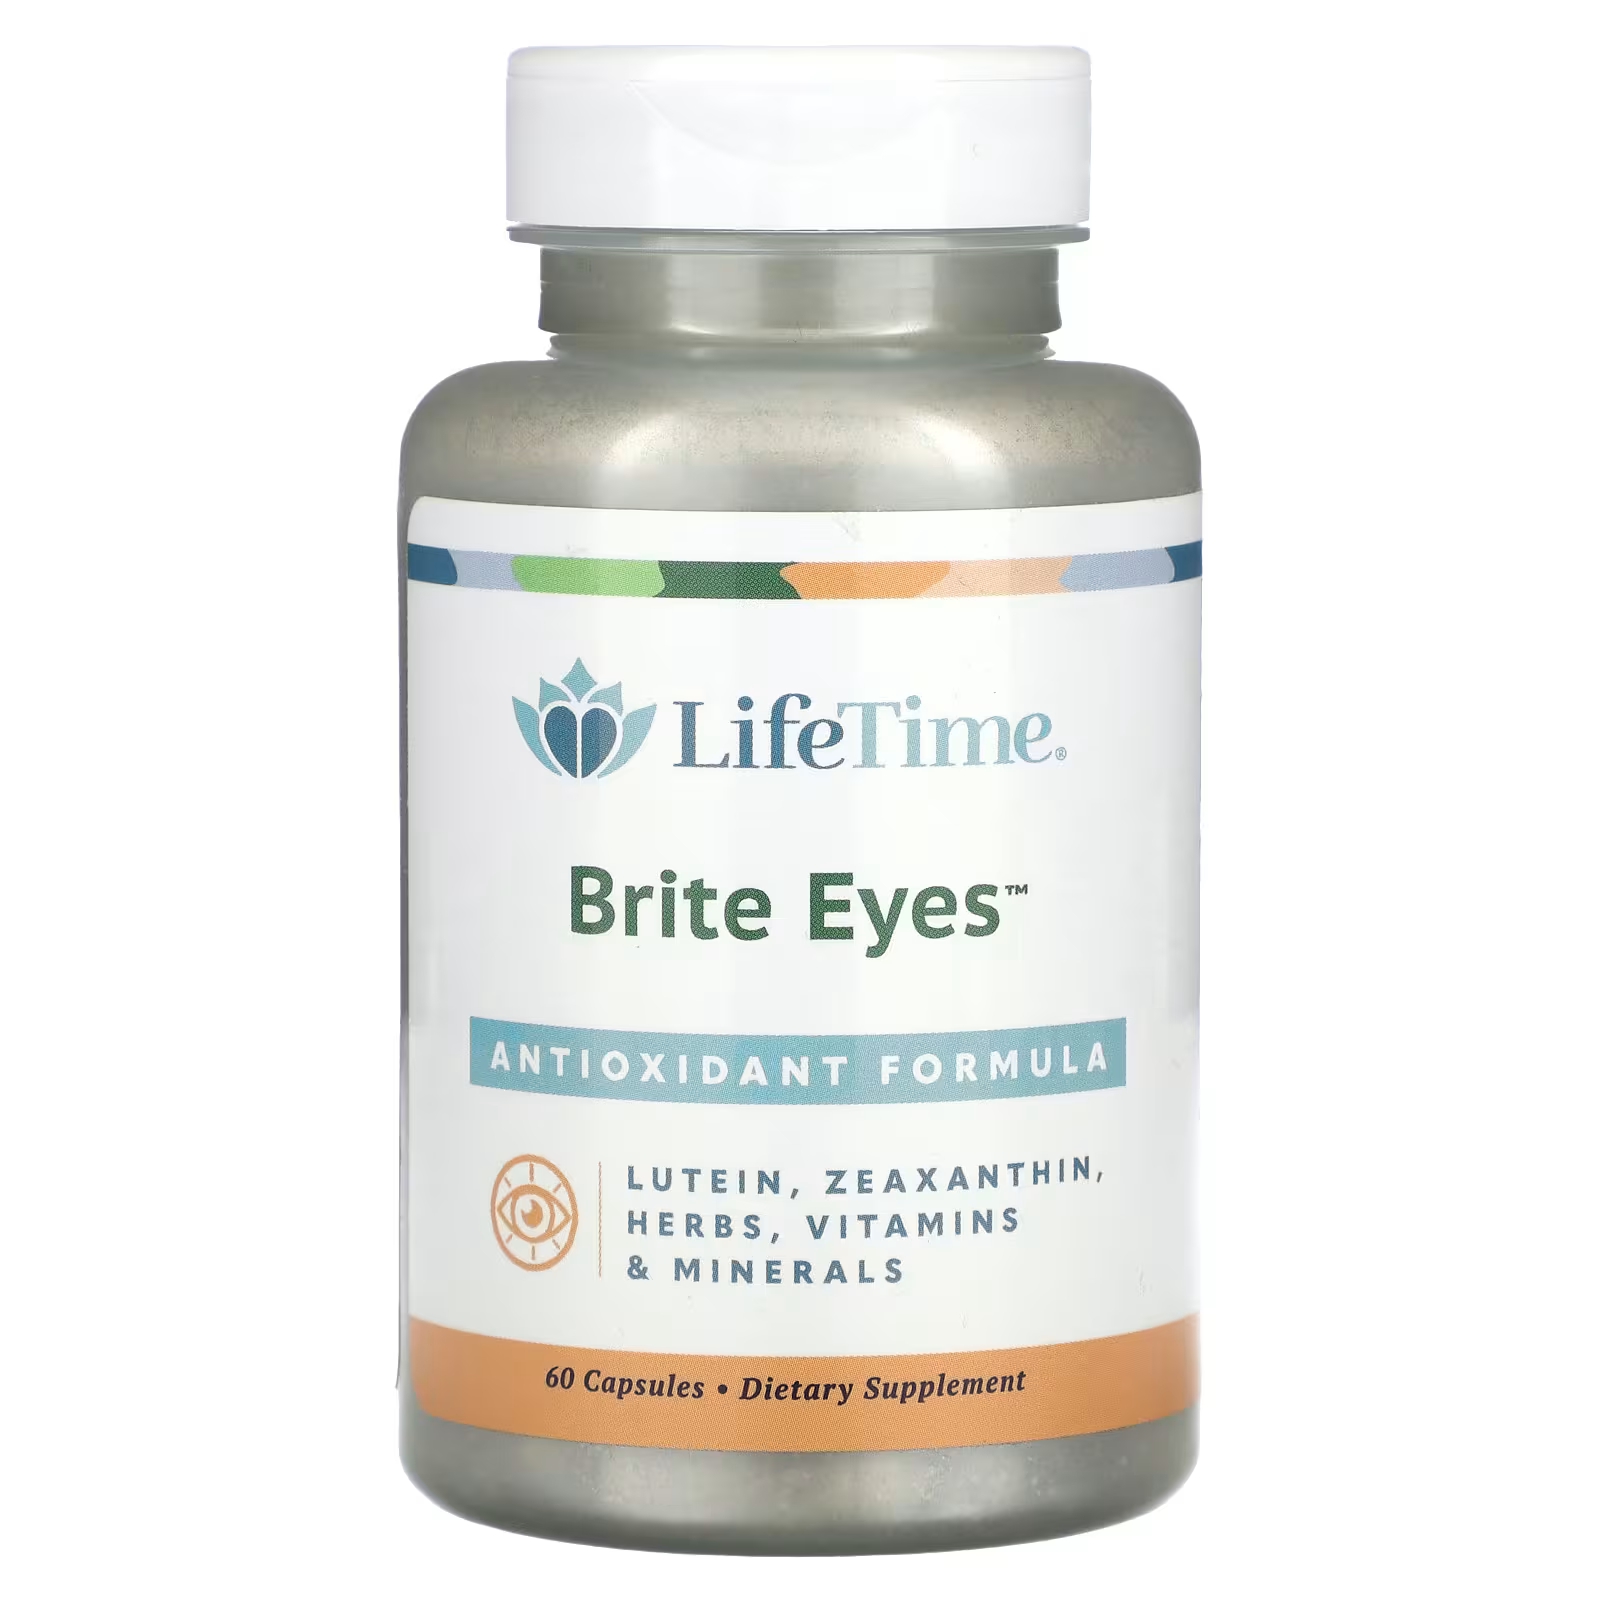 LifeTime витамины Brite Eyes антиоксидантная формула 60 капсул LifeTime Vitamins lifetime витамины успокаивают и успокаивают с relora 60 капсул lifetime vitamins